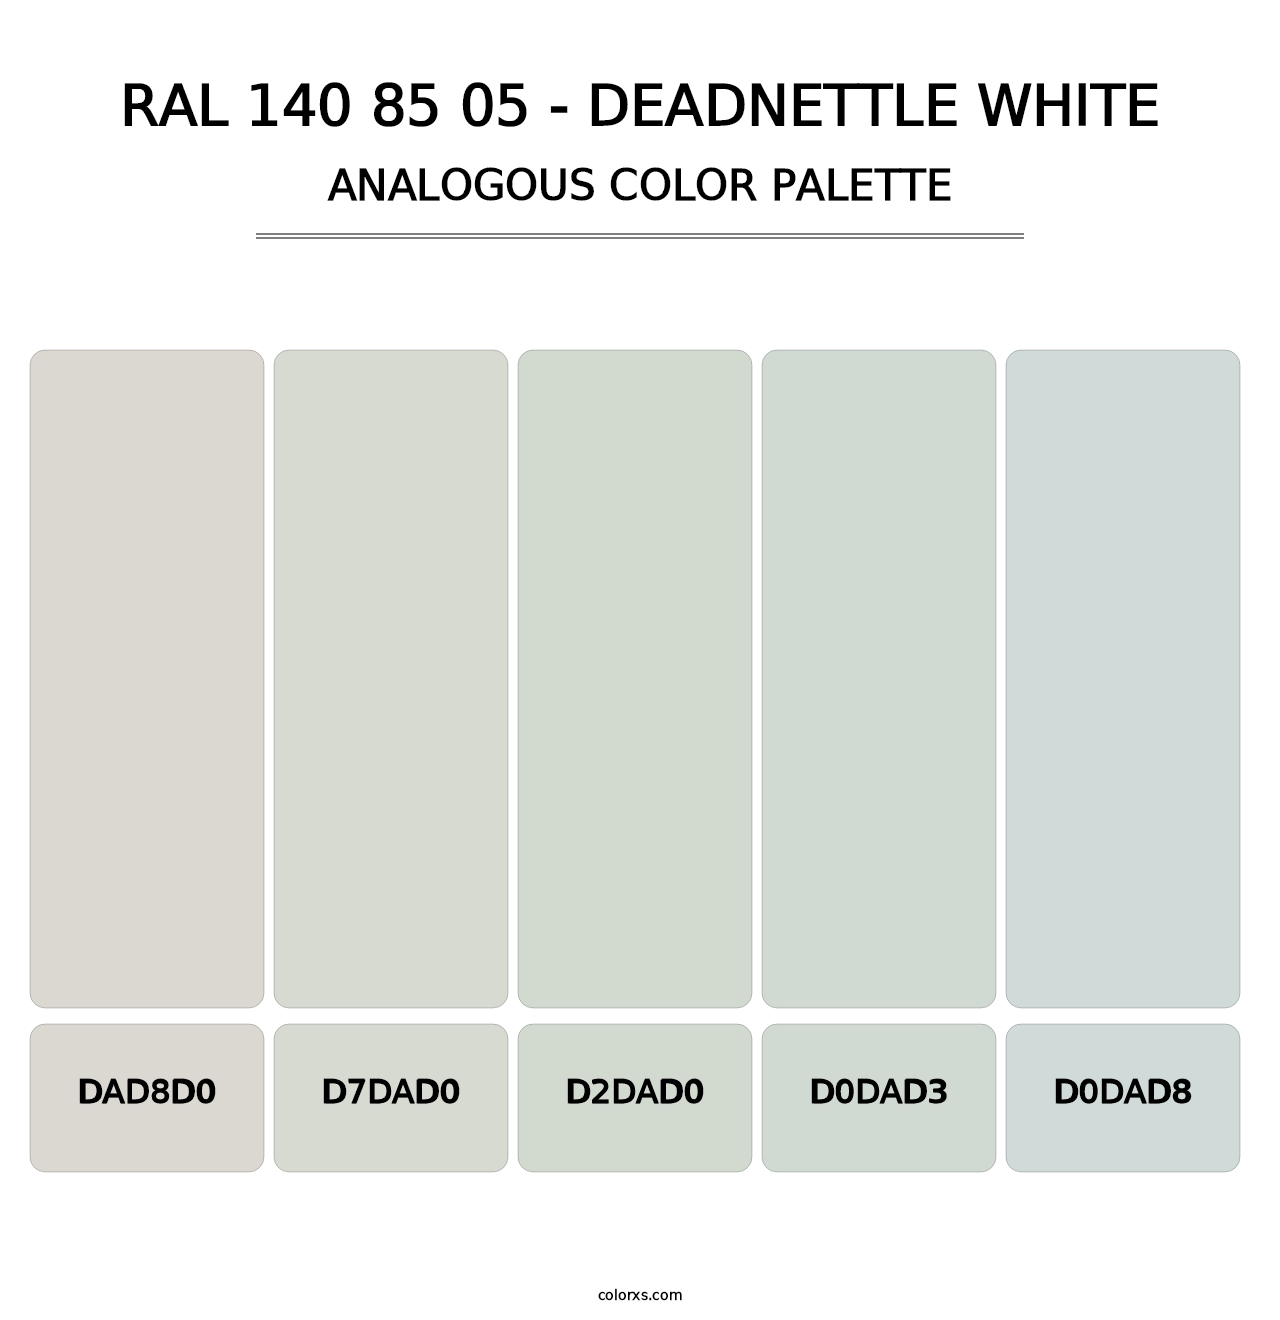 RAL 140 85 05 - Deadnettle White - Analogous Color Palette